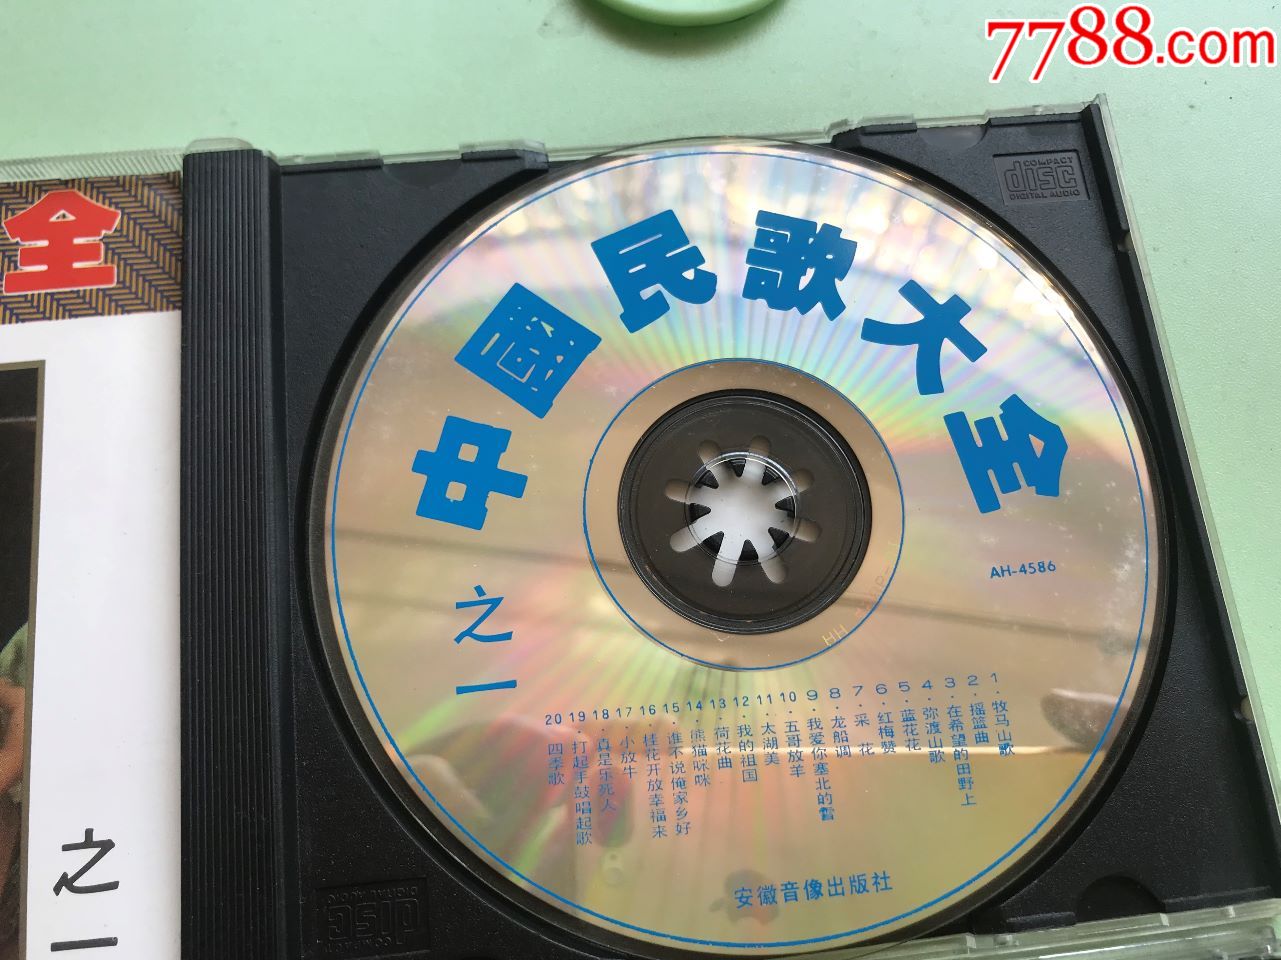 94年安徽音像首版,音乐cd,流行歌曲cd,标准型光盘,散曲合辑,九十年代